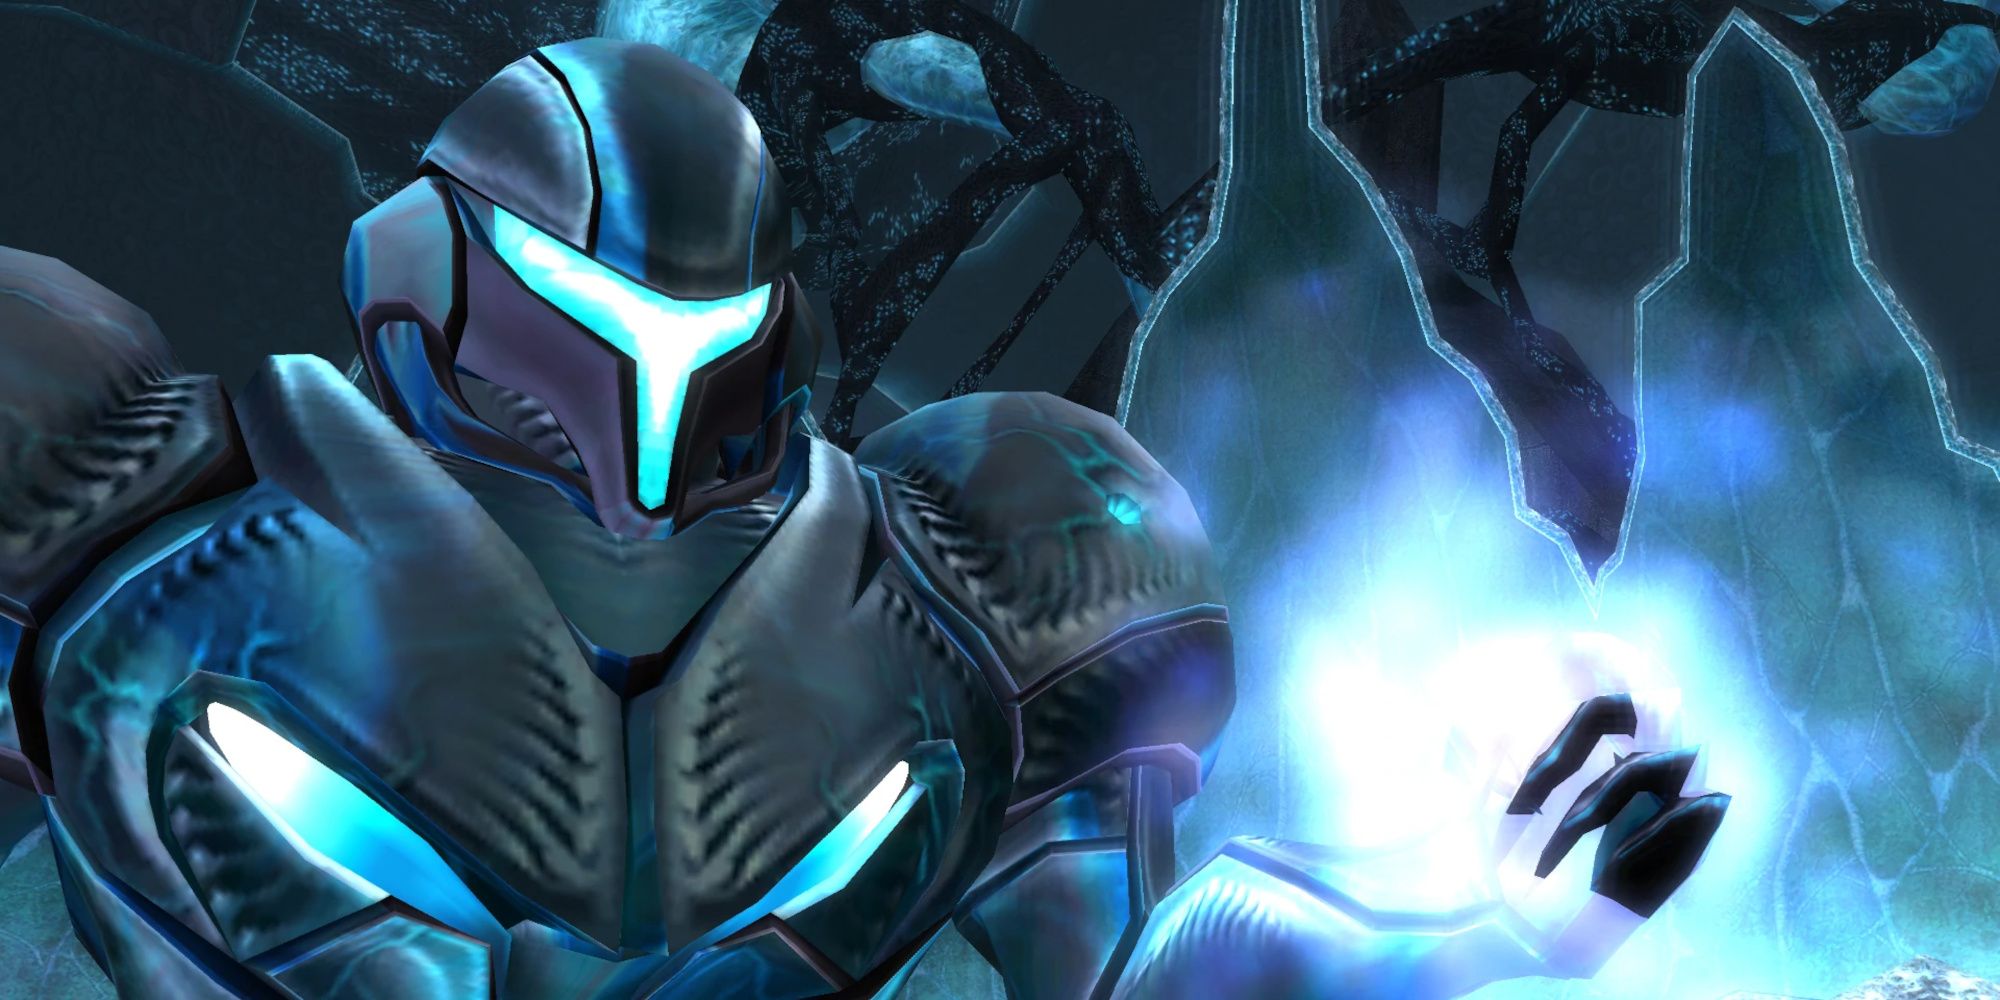 Dark Samus in Metroid Prime 3 Corruption